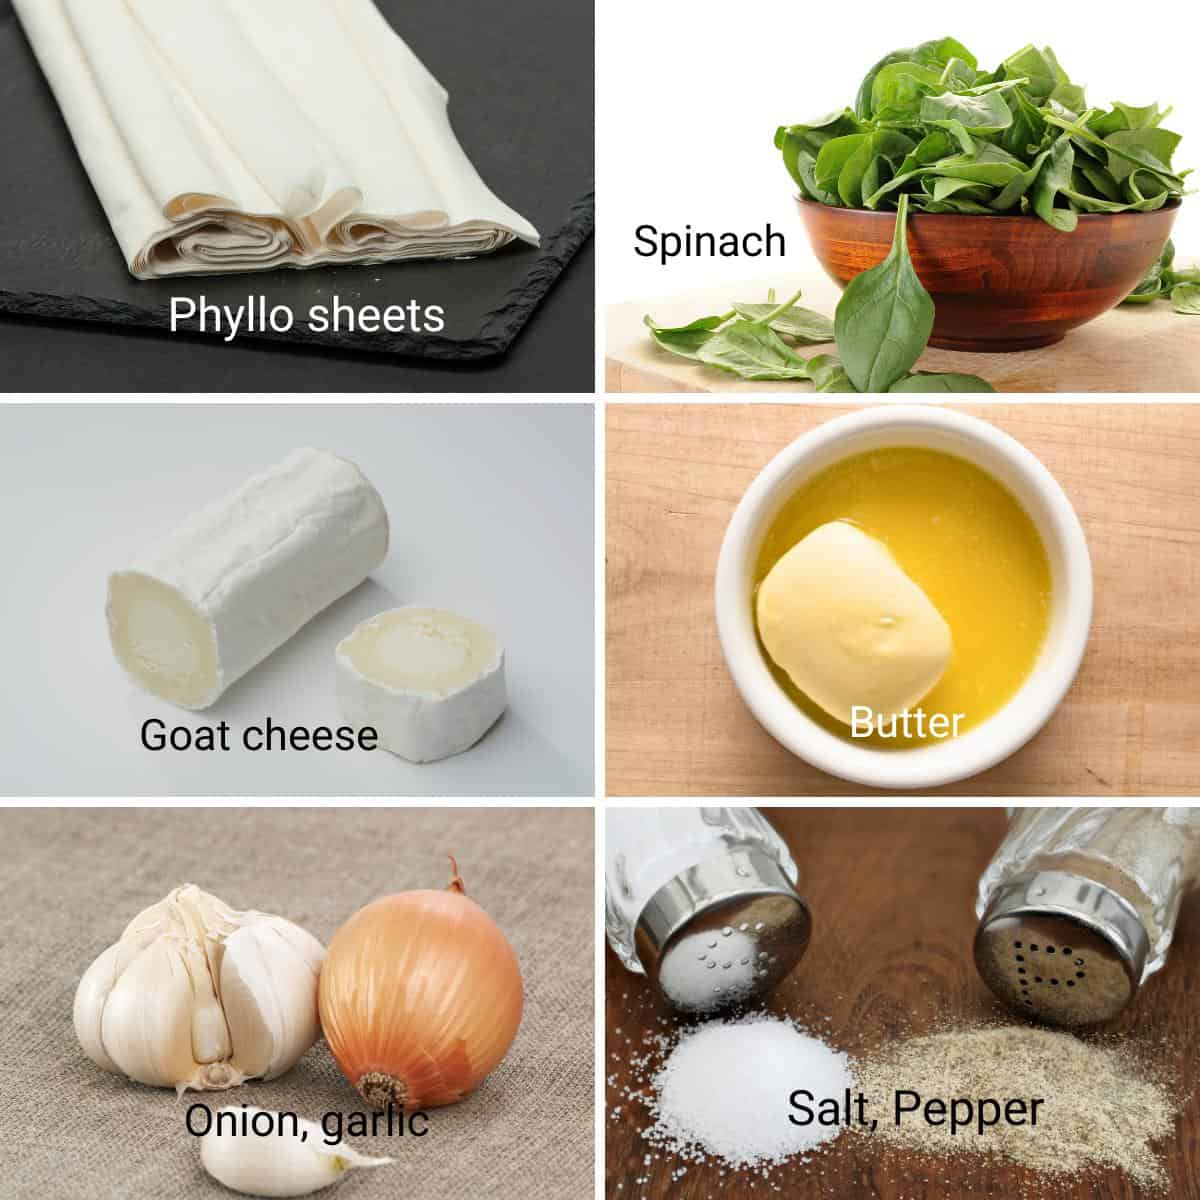 Ingredients for strudel.